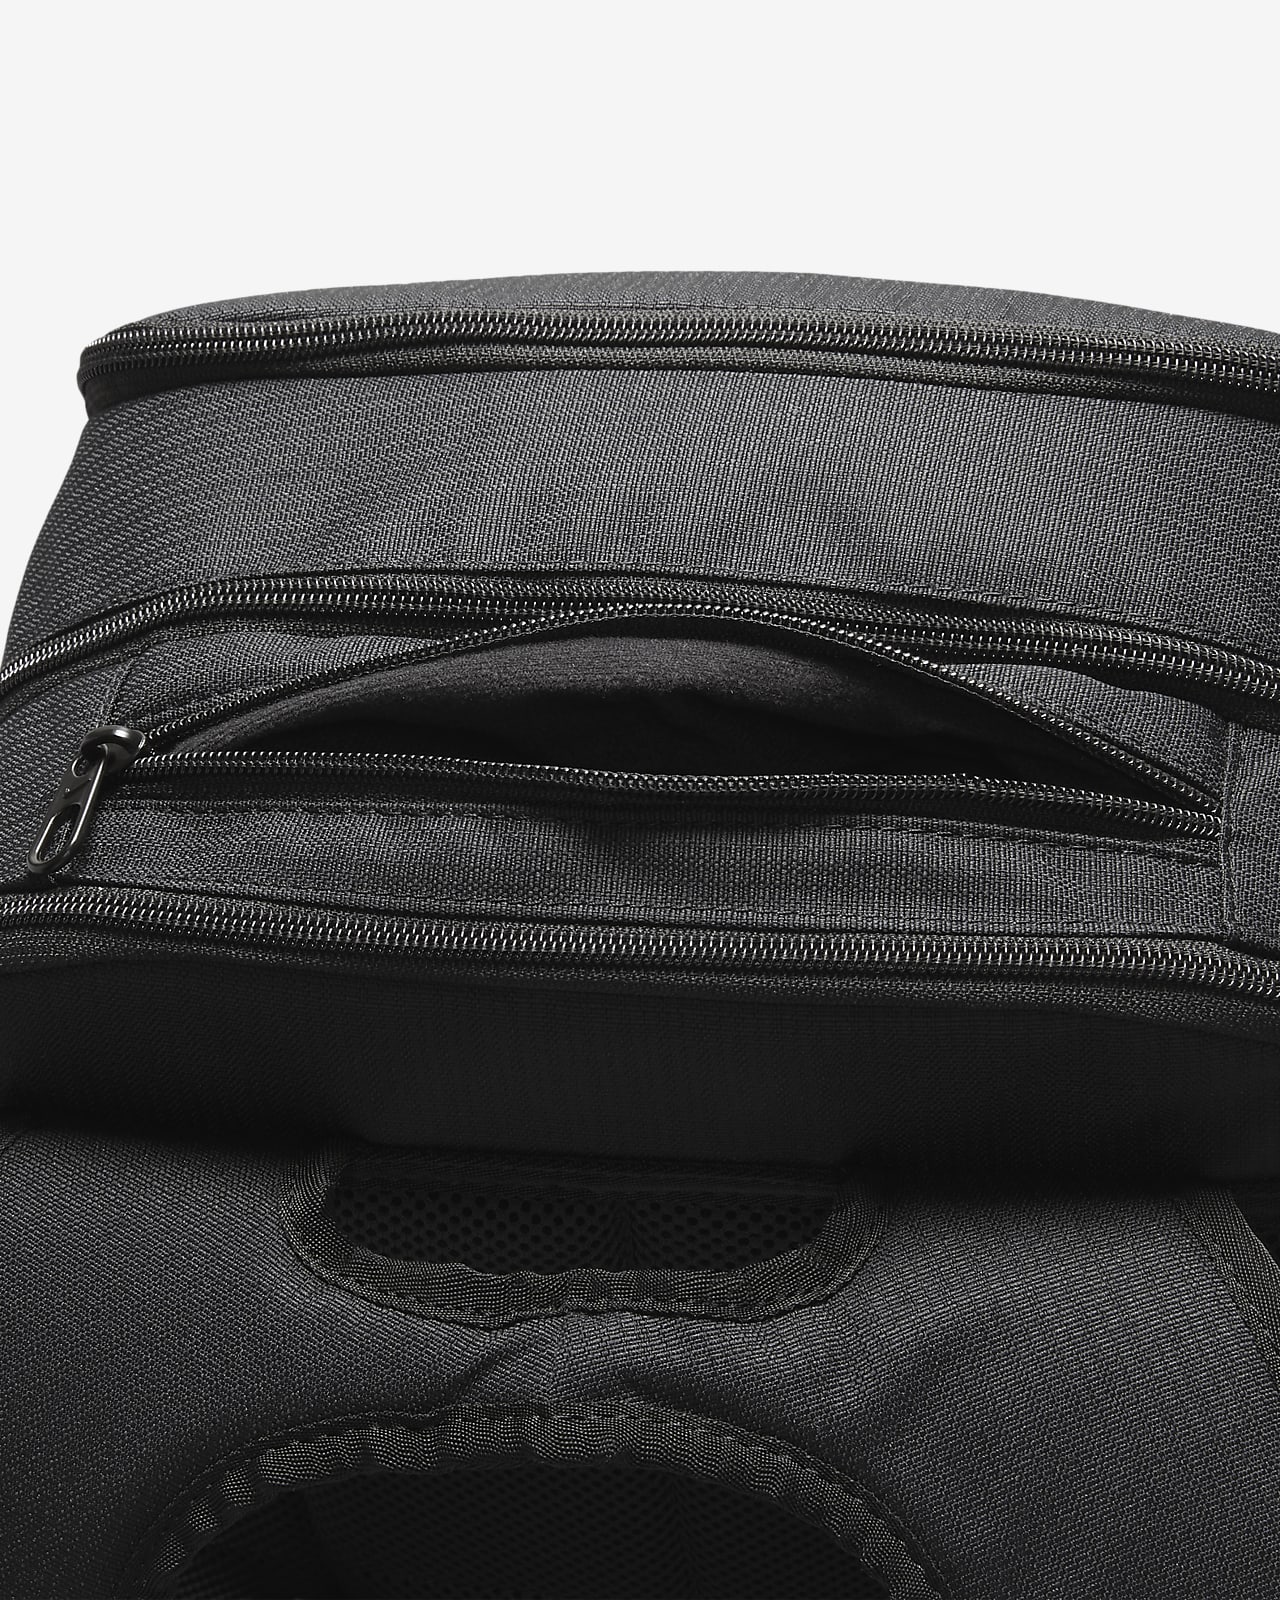 Nike Brasilia Backpack XL 9.0